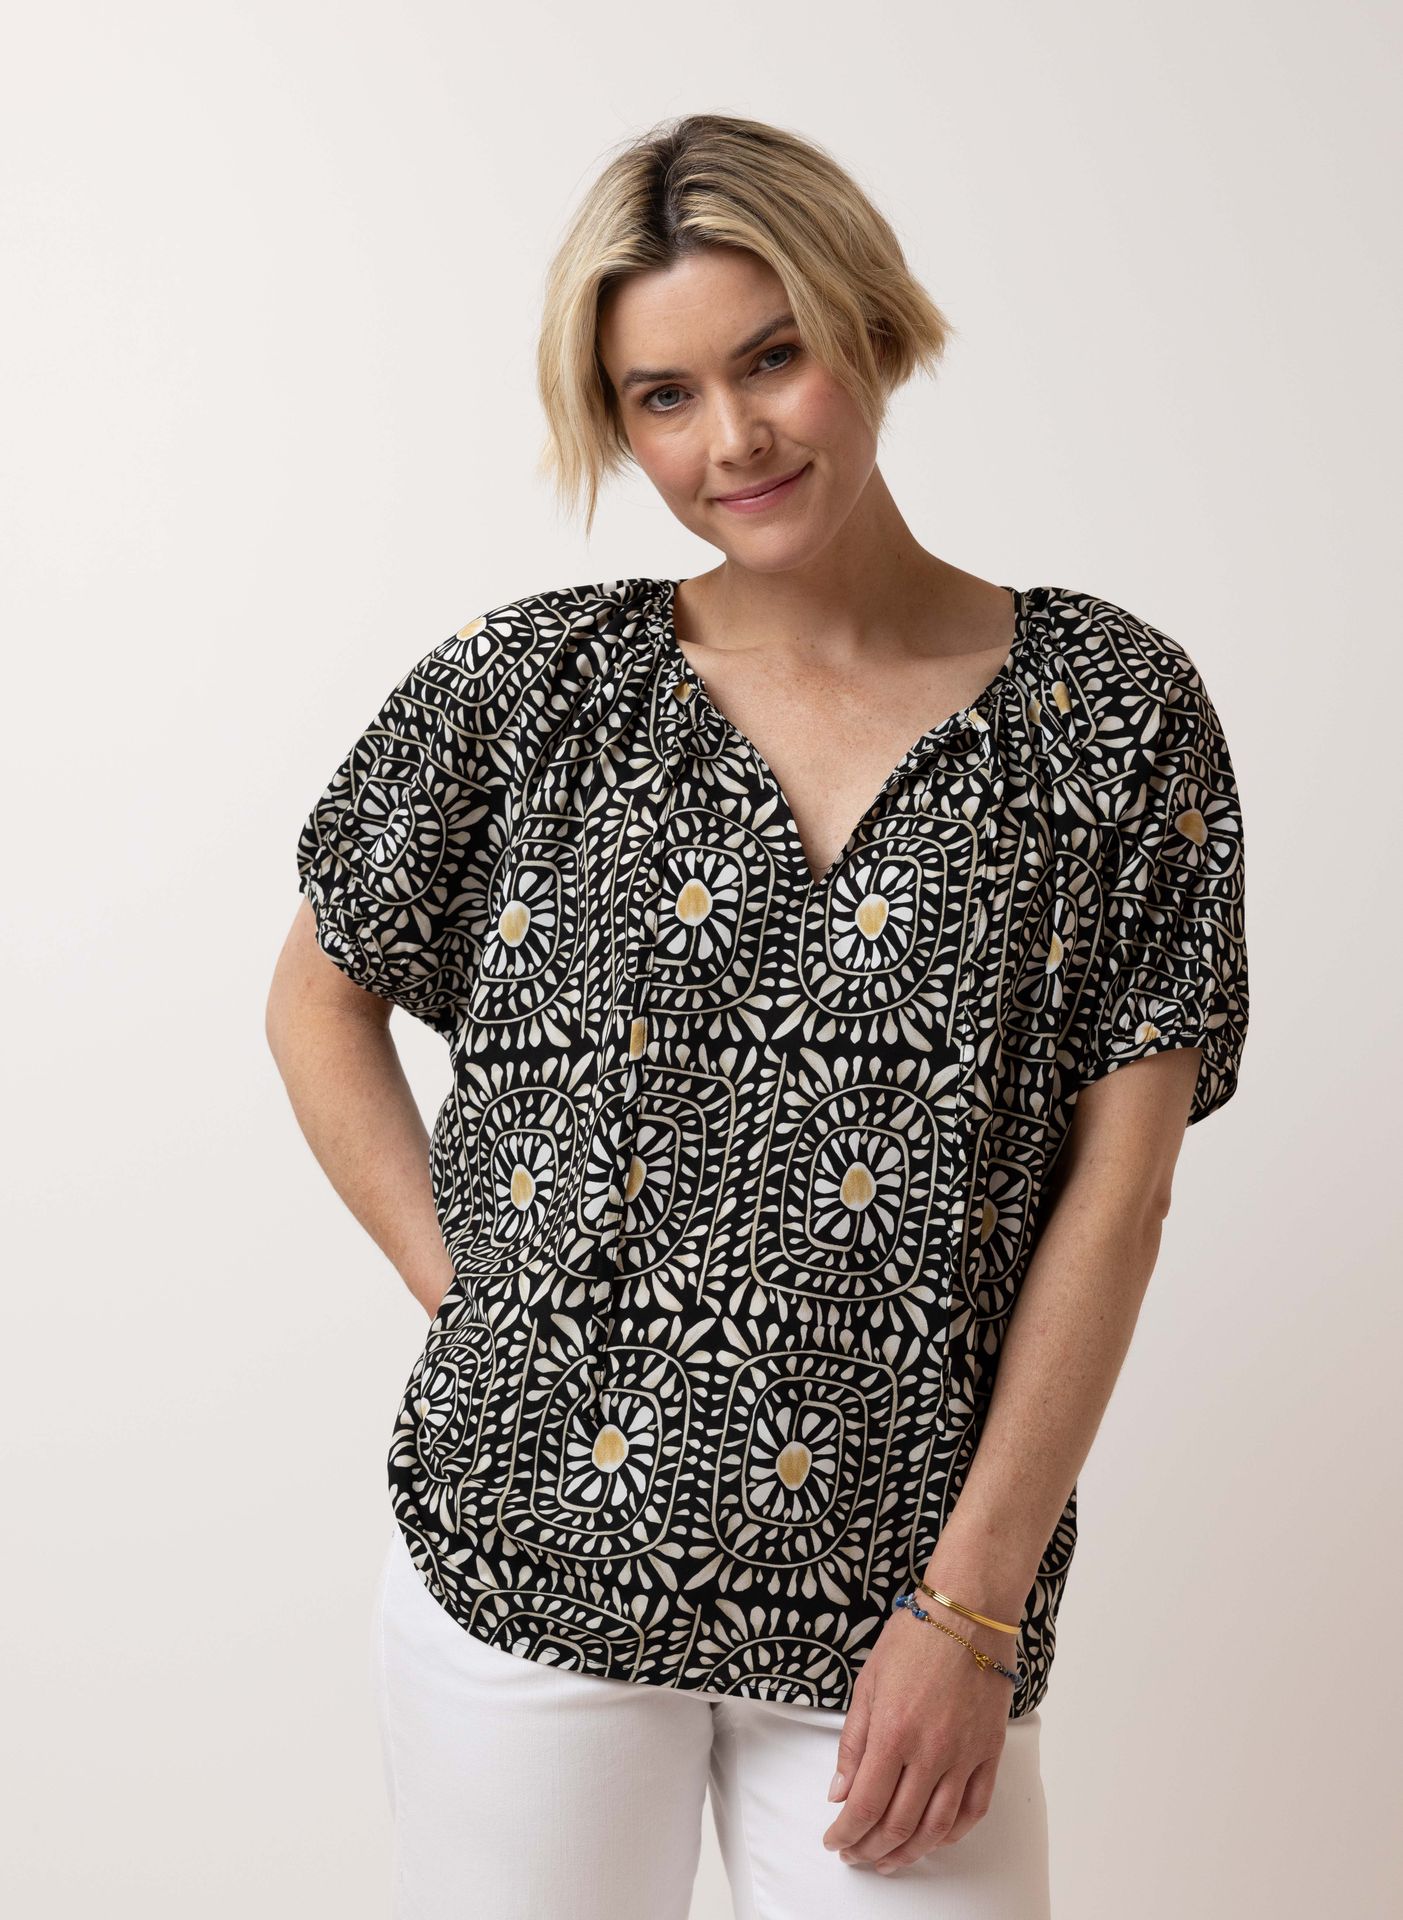 Norah Meerkleurige blouse black multicolor 214638-020